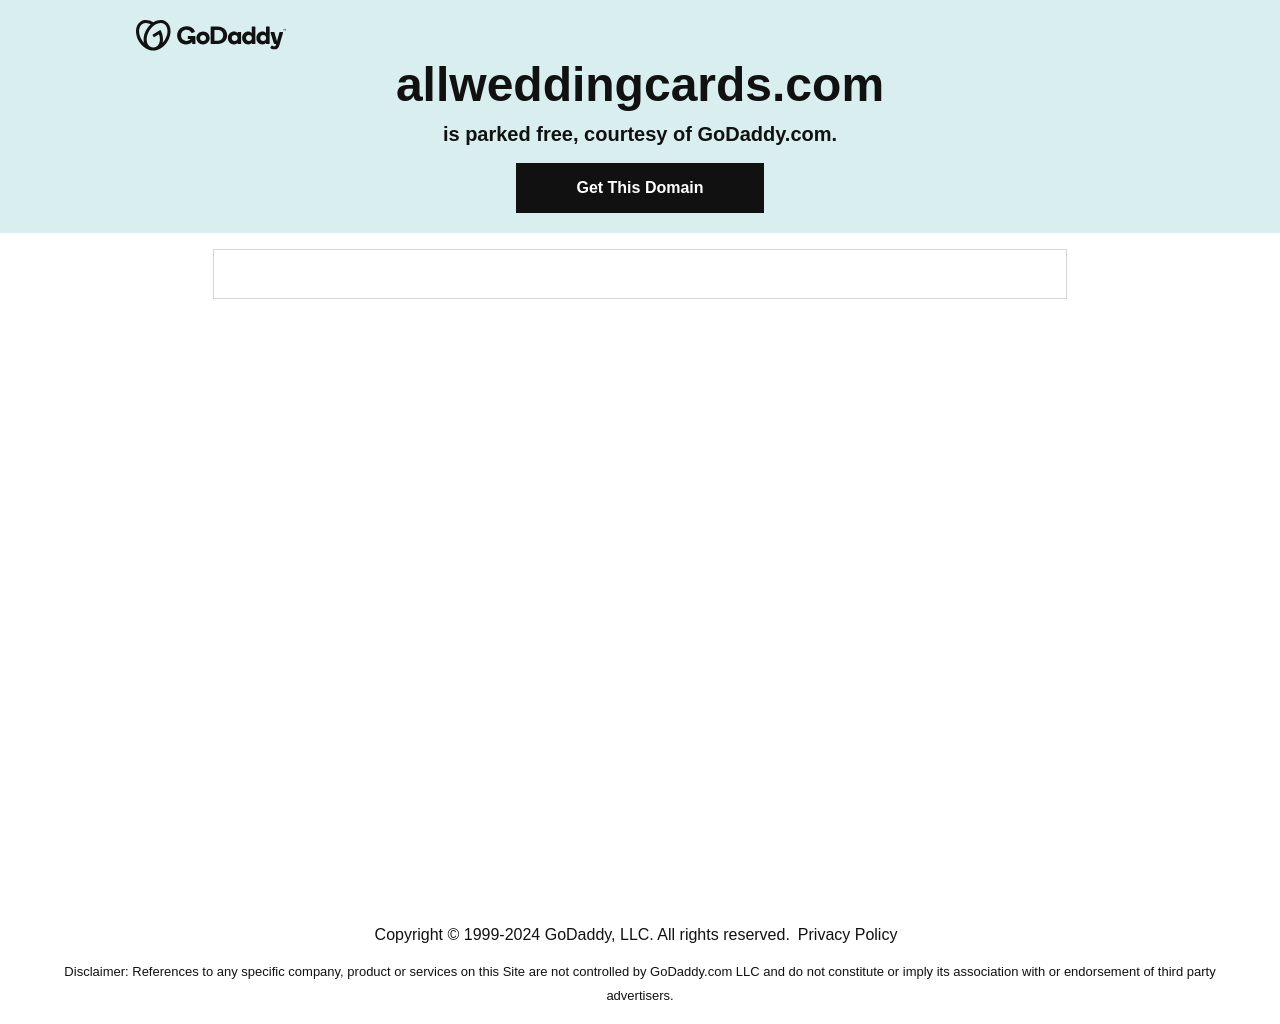 allweddingcards.com